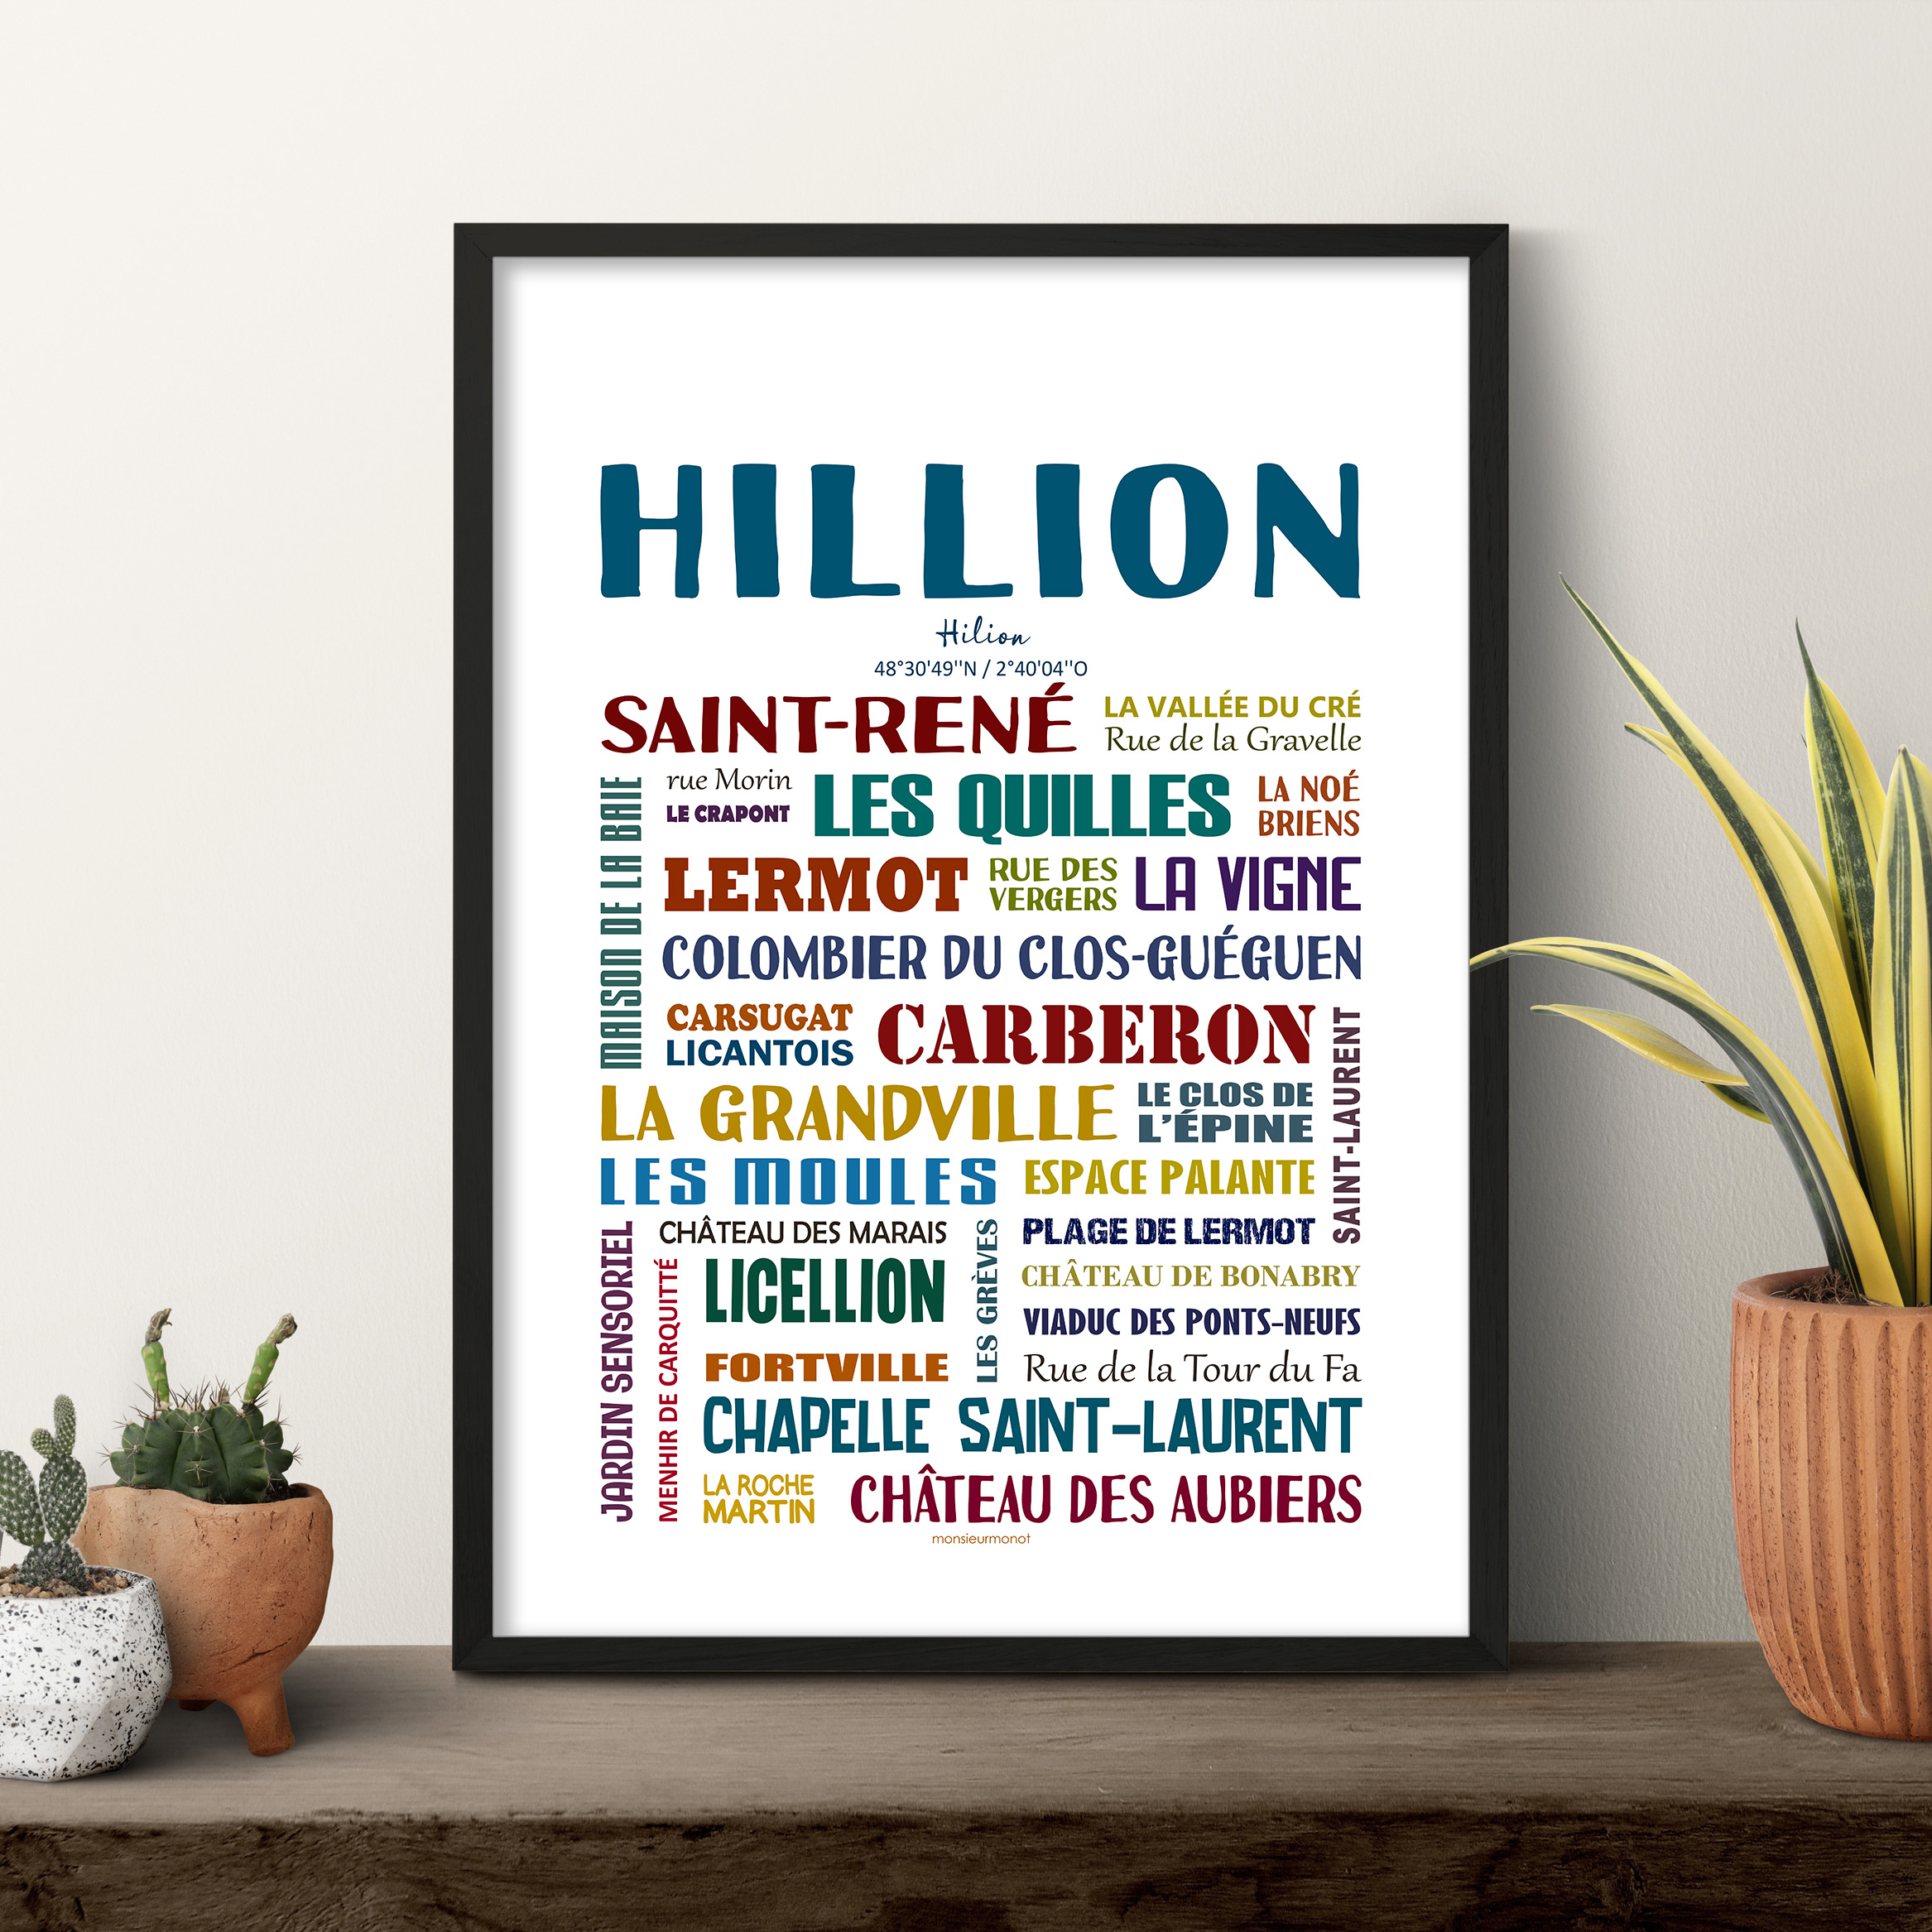 Hillion 2